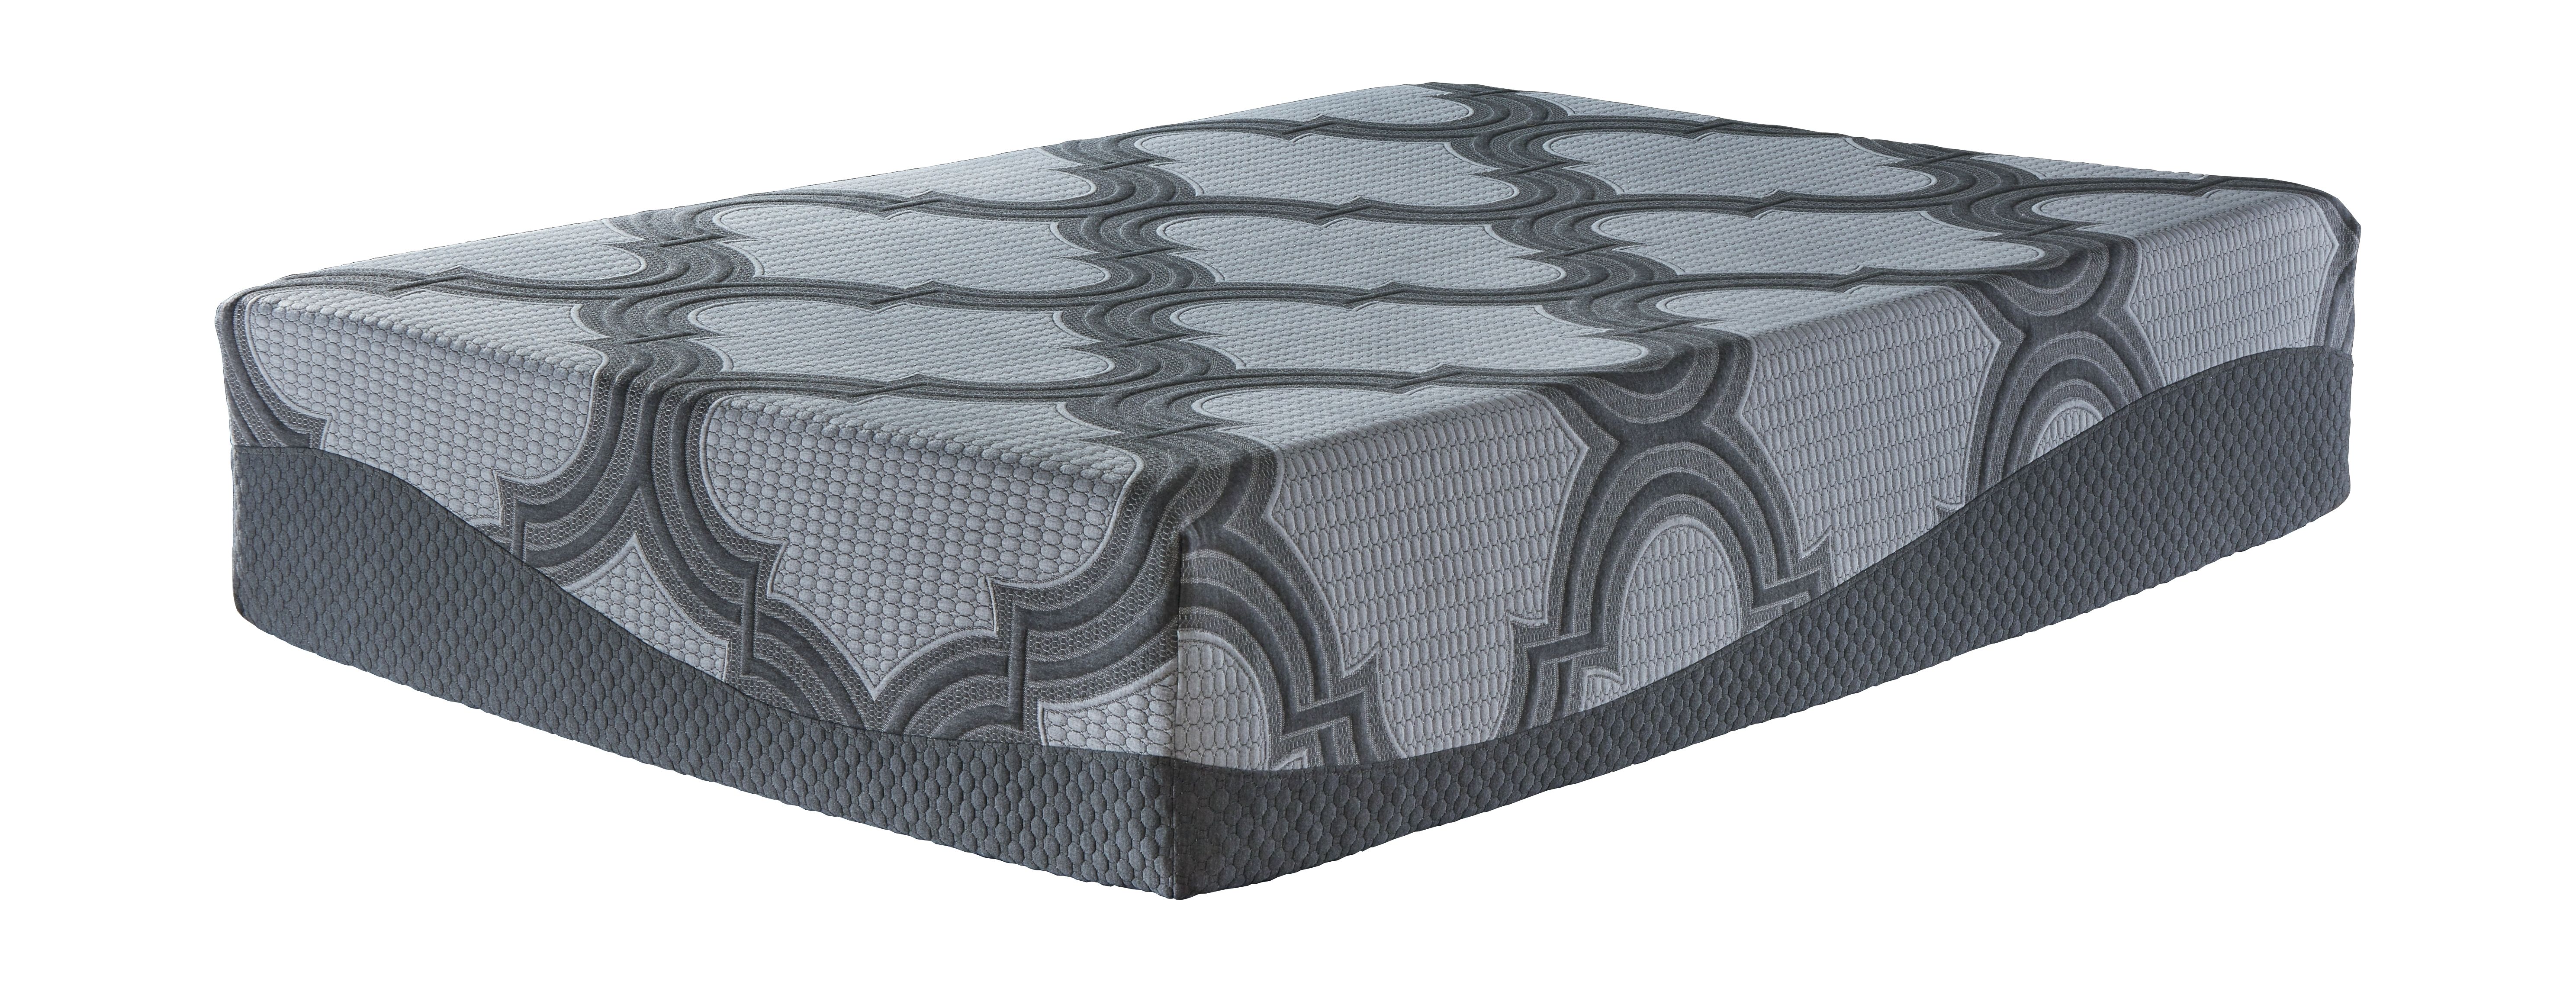 ashley hybrid king mattress